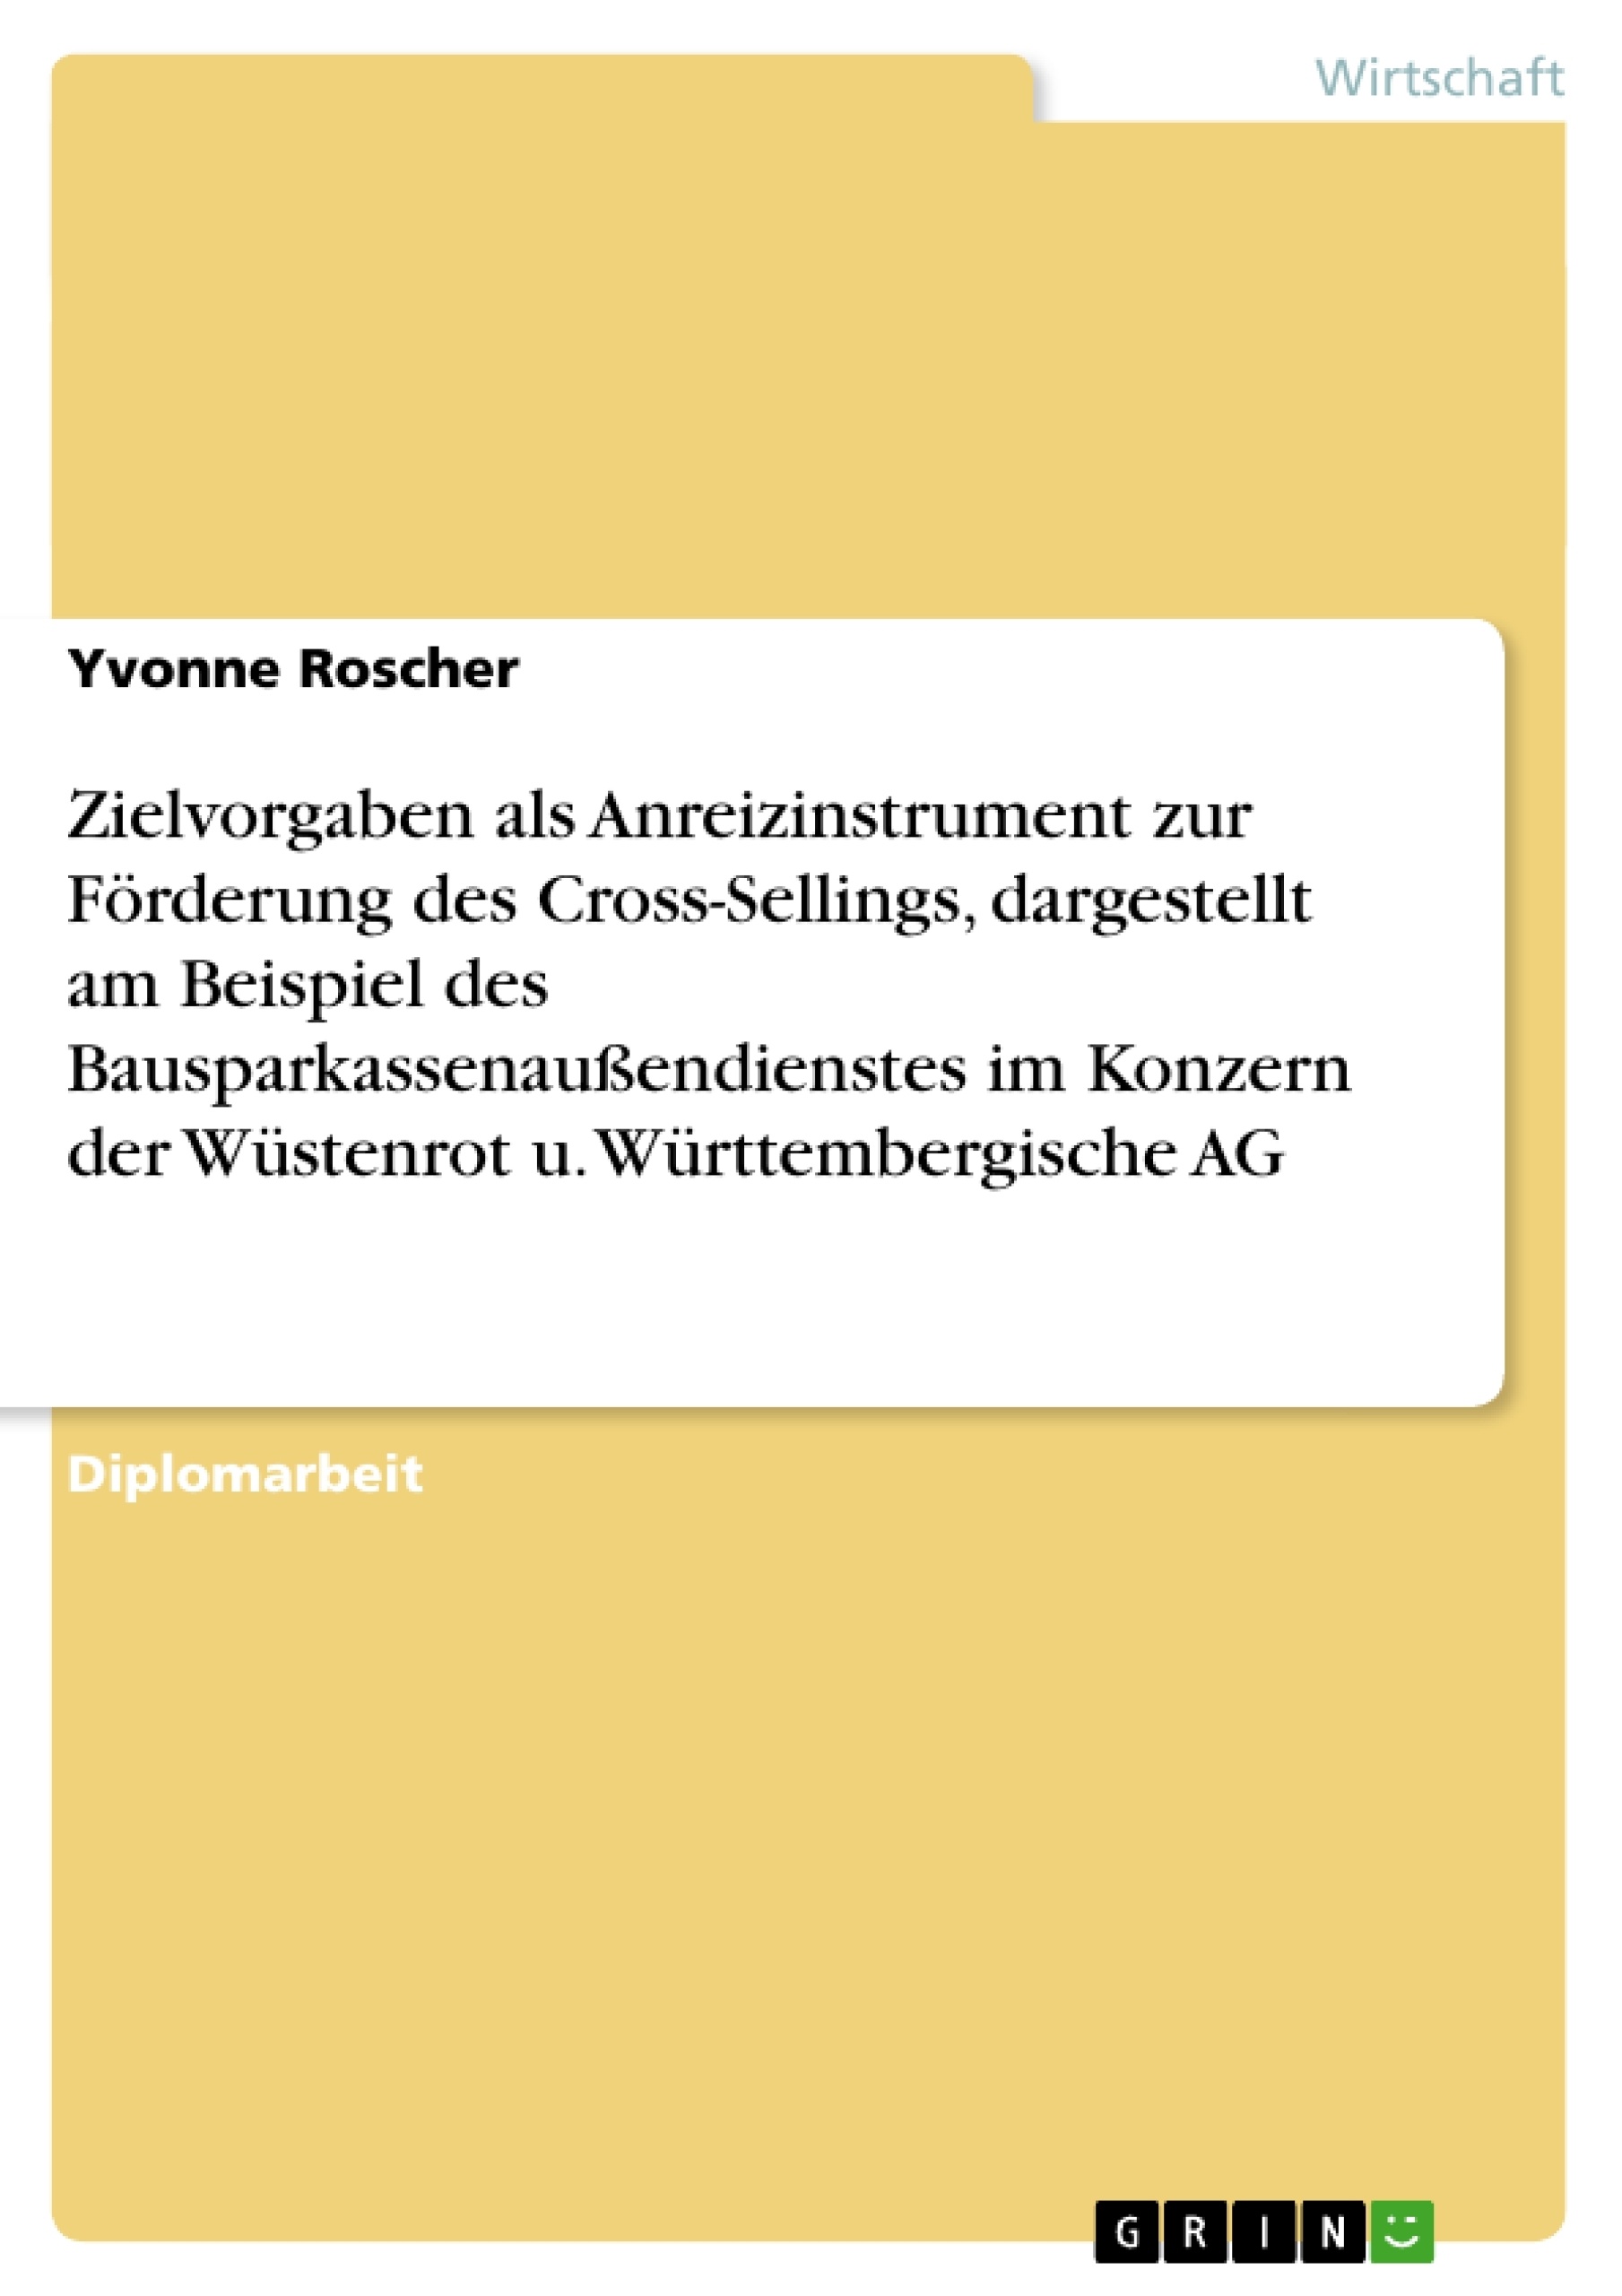 Titel: Zielvorgaben als Anreizinstrument zur Förderung des Cross-Sellings, dargestellt am Beispiel des Bausparkassenaußendienstes im Konzern der Wüstenrot u. Württembergische AG